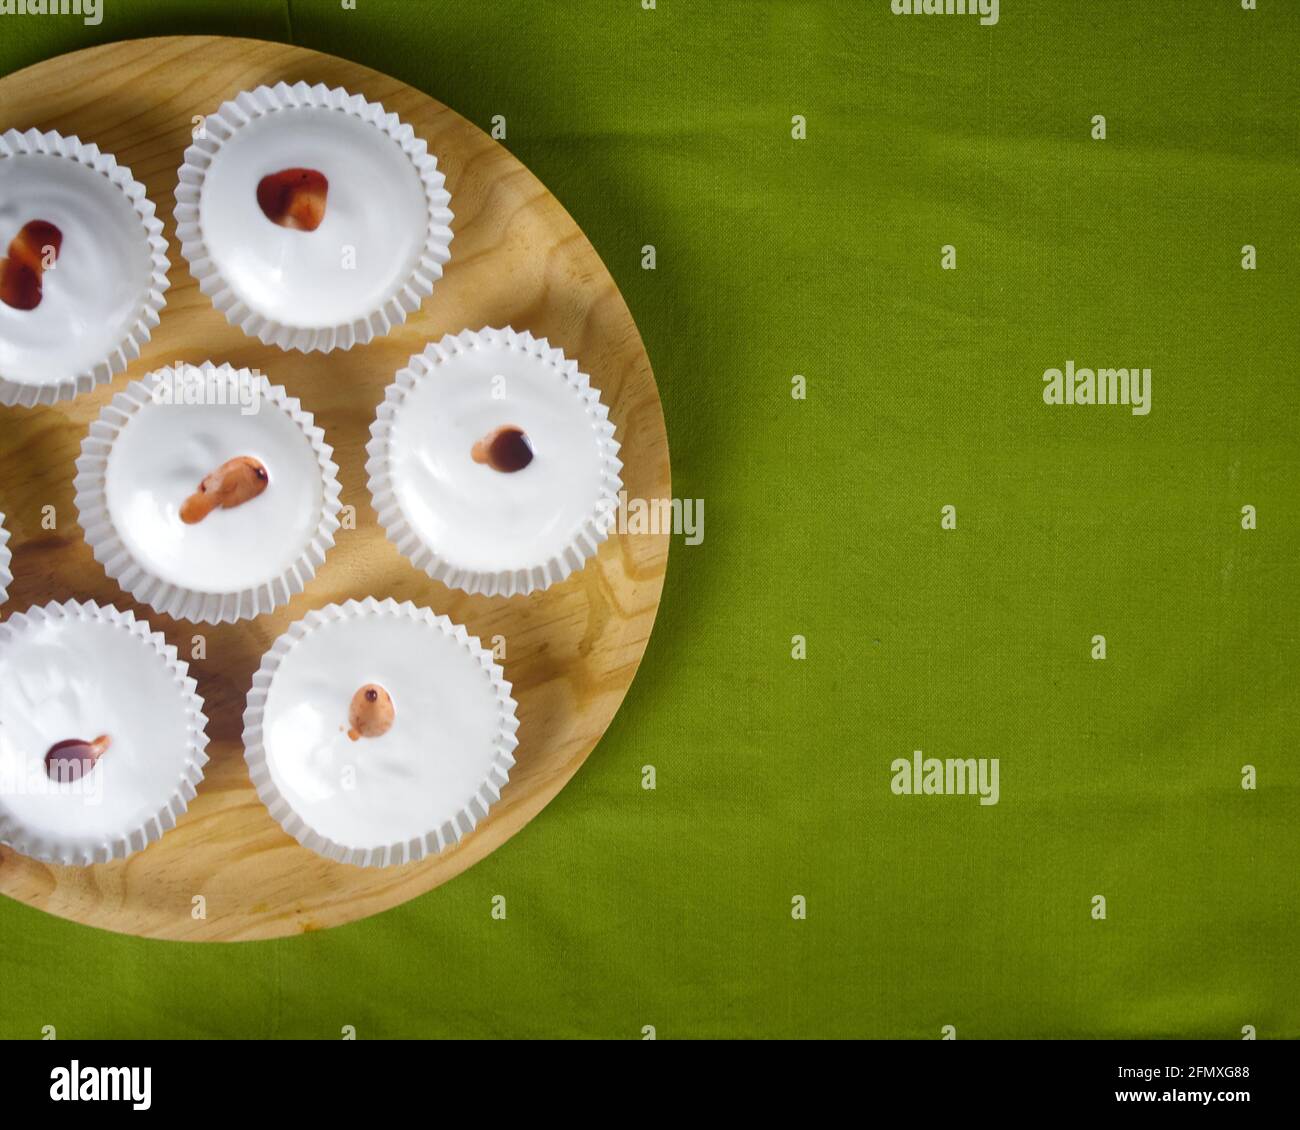 Mehrere rohe französische Dessert-Meringues mit Erdbeersoße auf einer grünen Tischdecke und einem runden Holzteller. Draufsicht Stockfoto